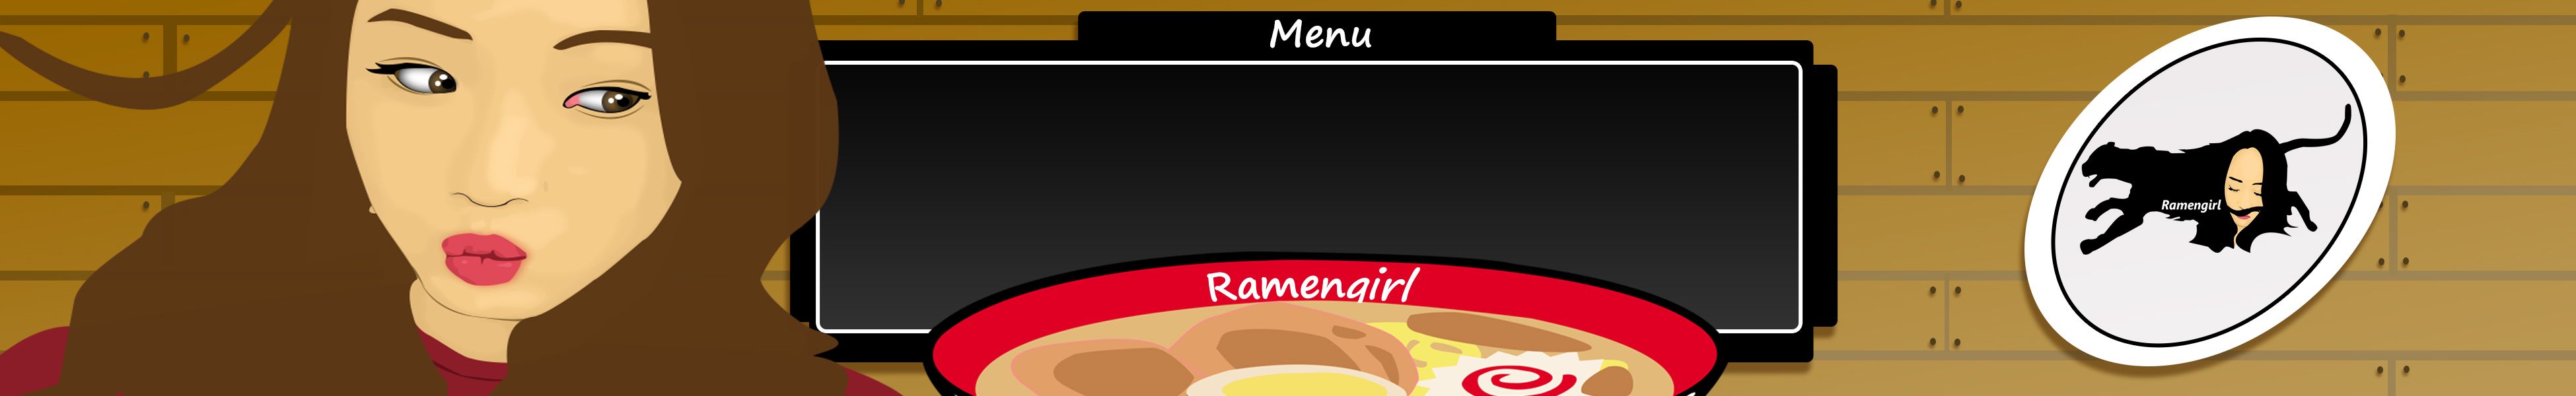 ramen 2 final menu 2.jpg